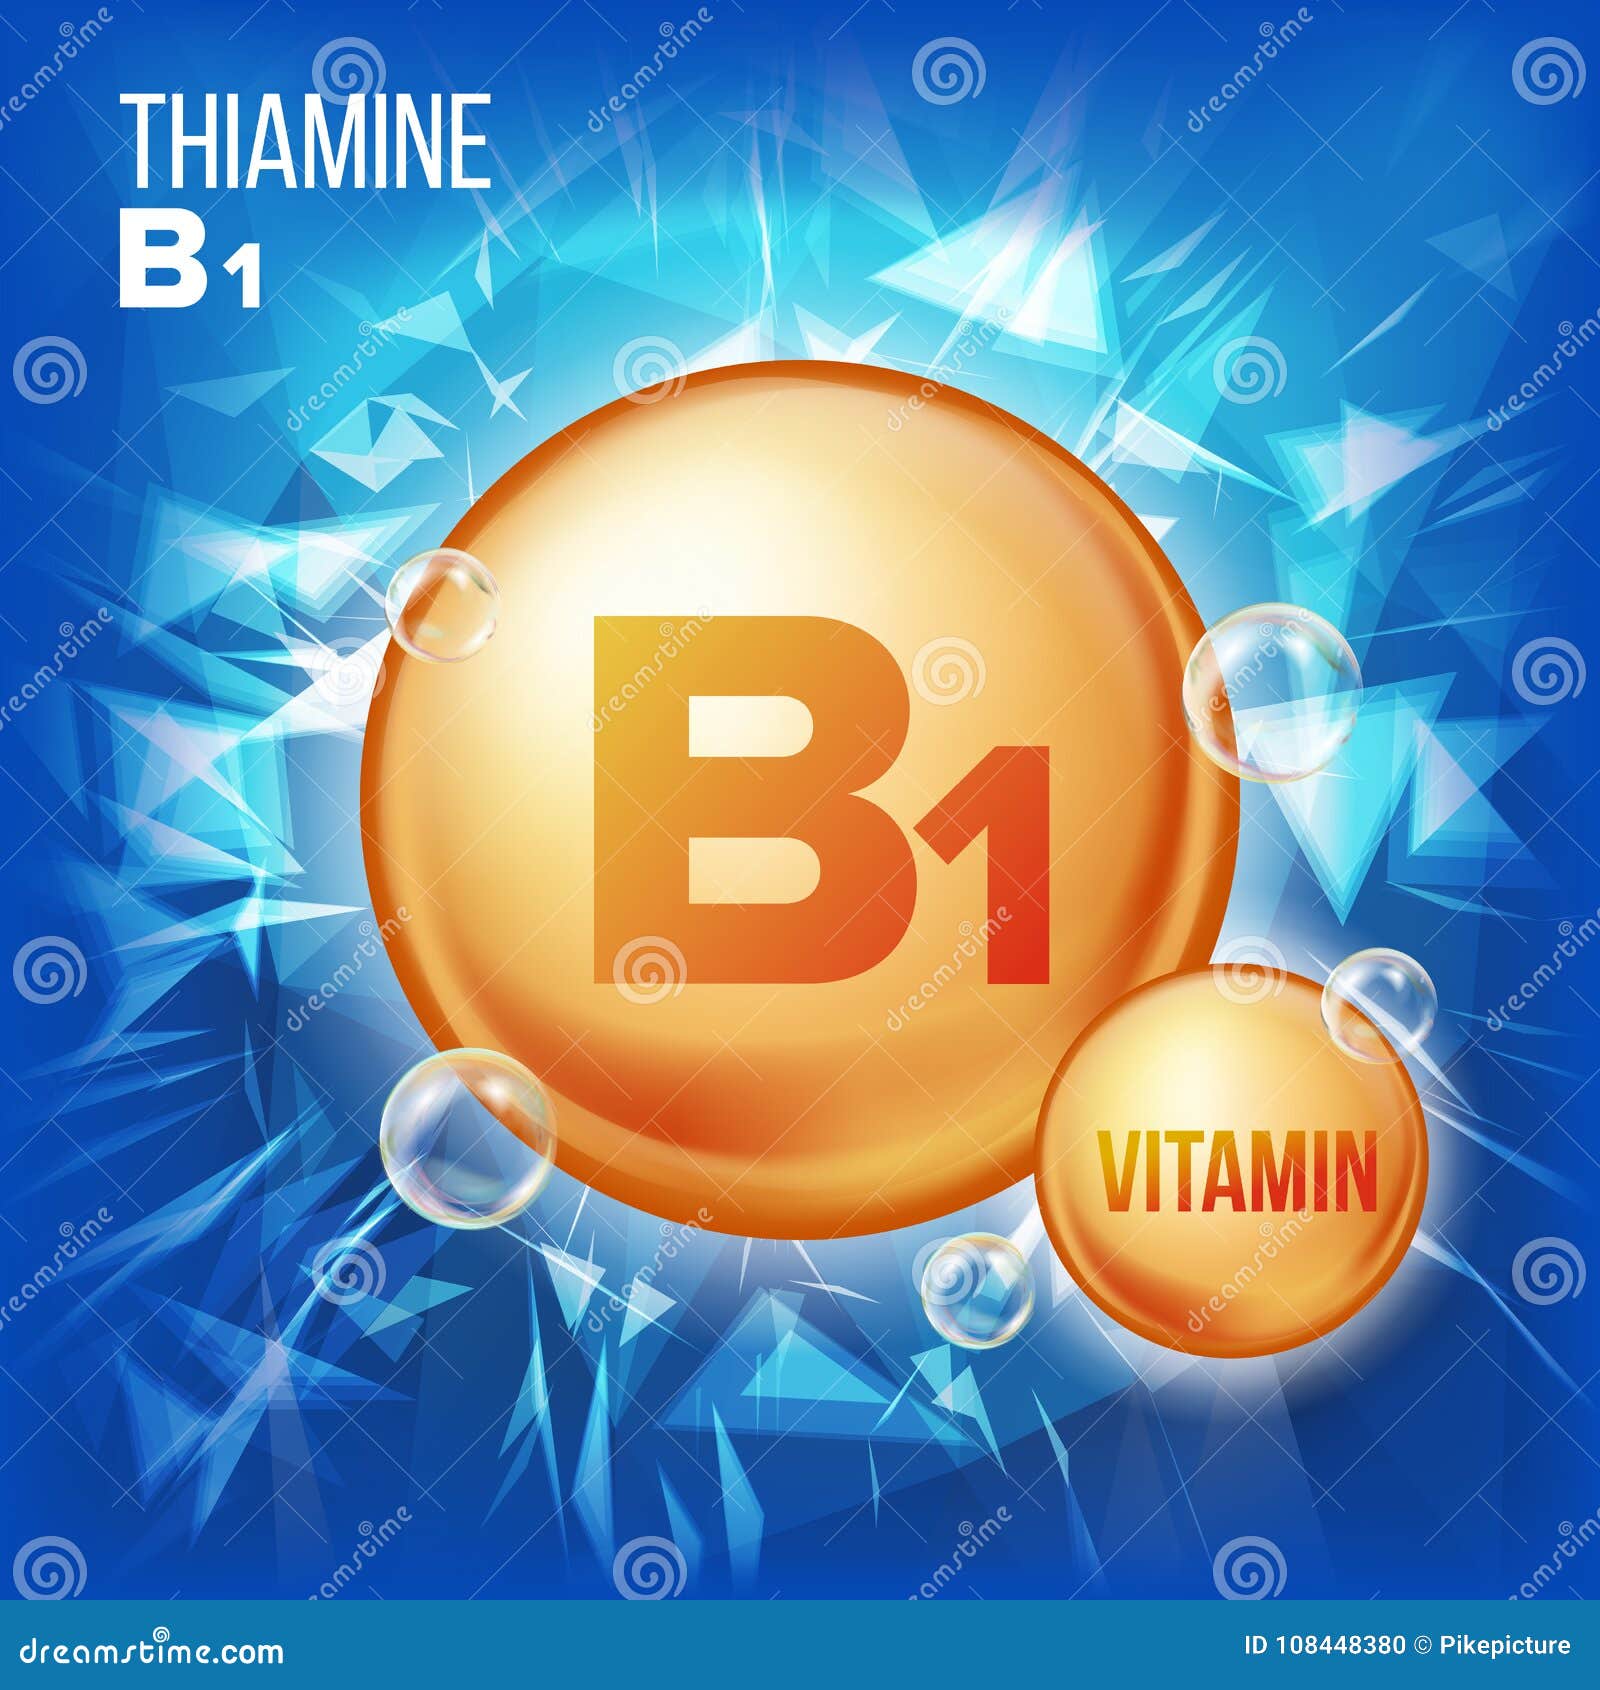 Vetor do Thiamine da vitamina B1 Ícone do comprimido do óleo do ouro da vitamina Ícone orgânico do comprimido do ouro da vitamina Para a beleza, cosmético, Heath Promo Ads Design ilustração do complexo da vitamina 3D